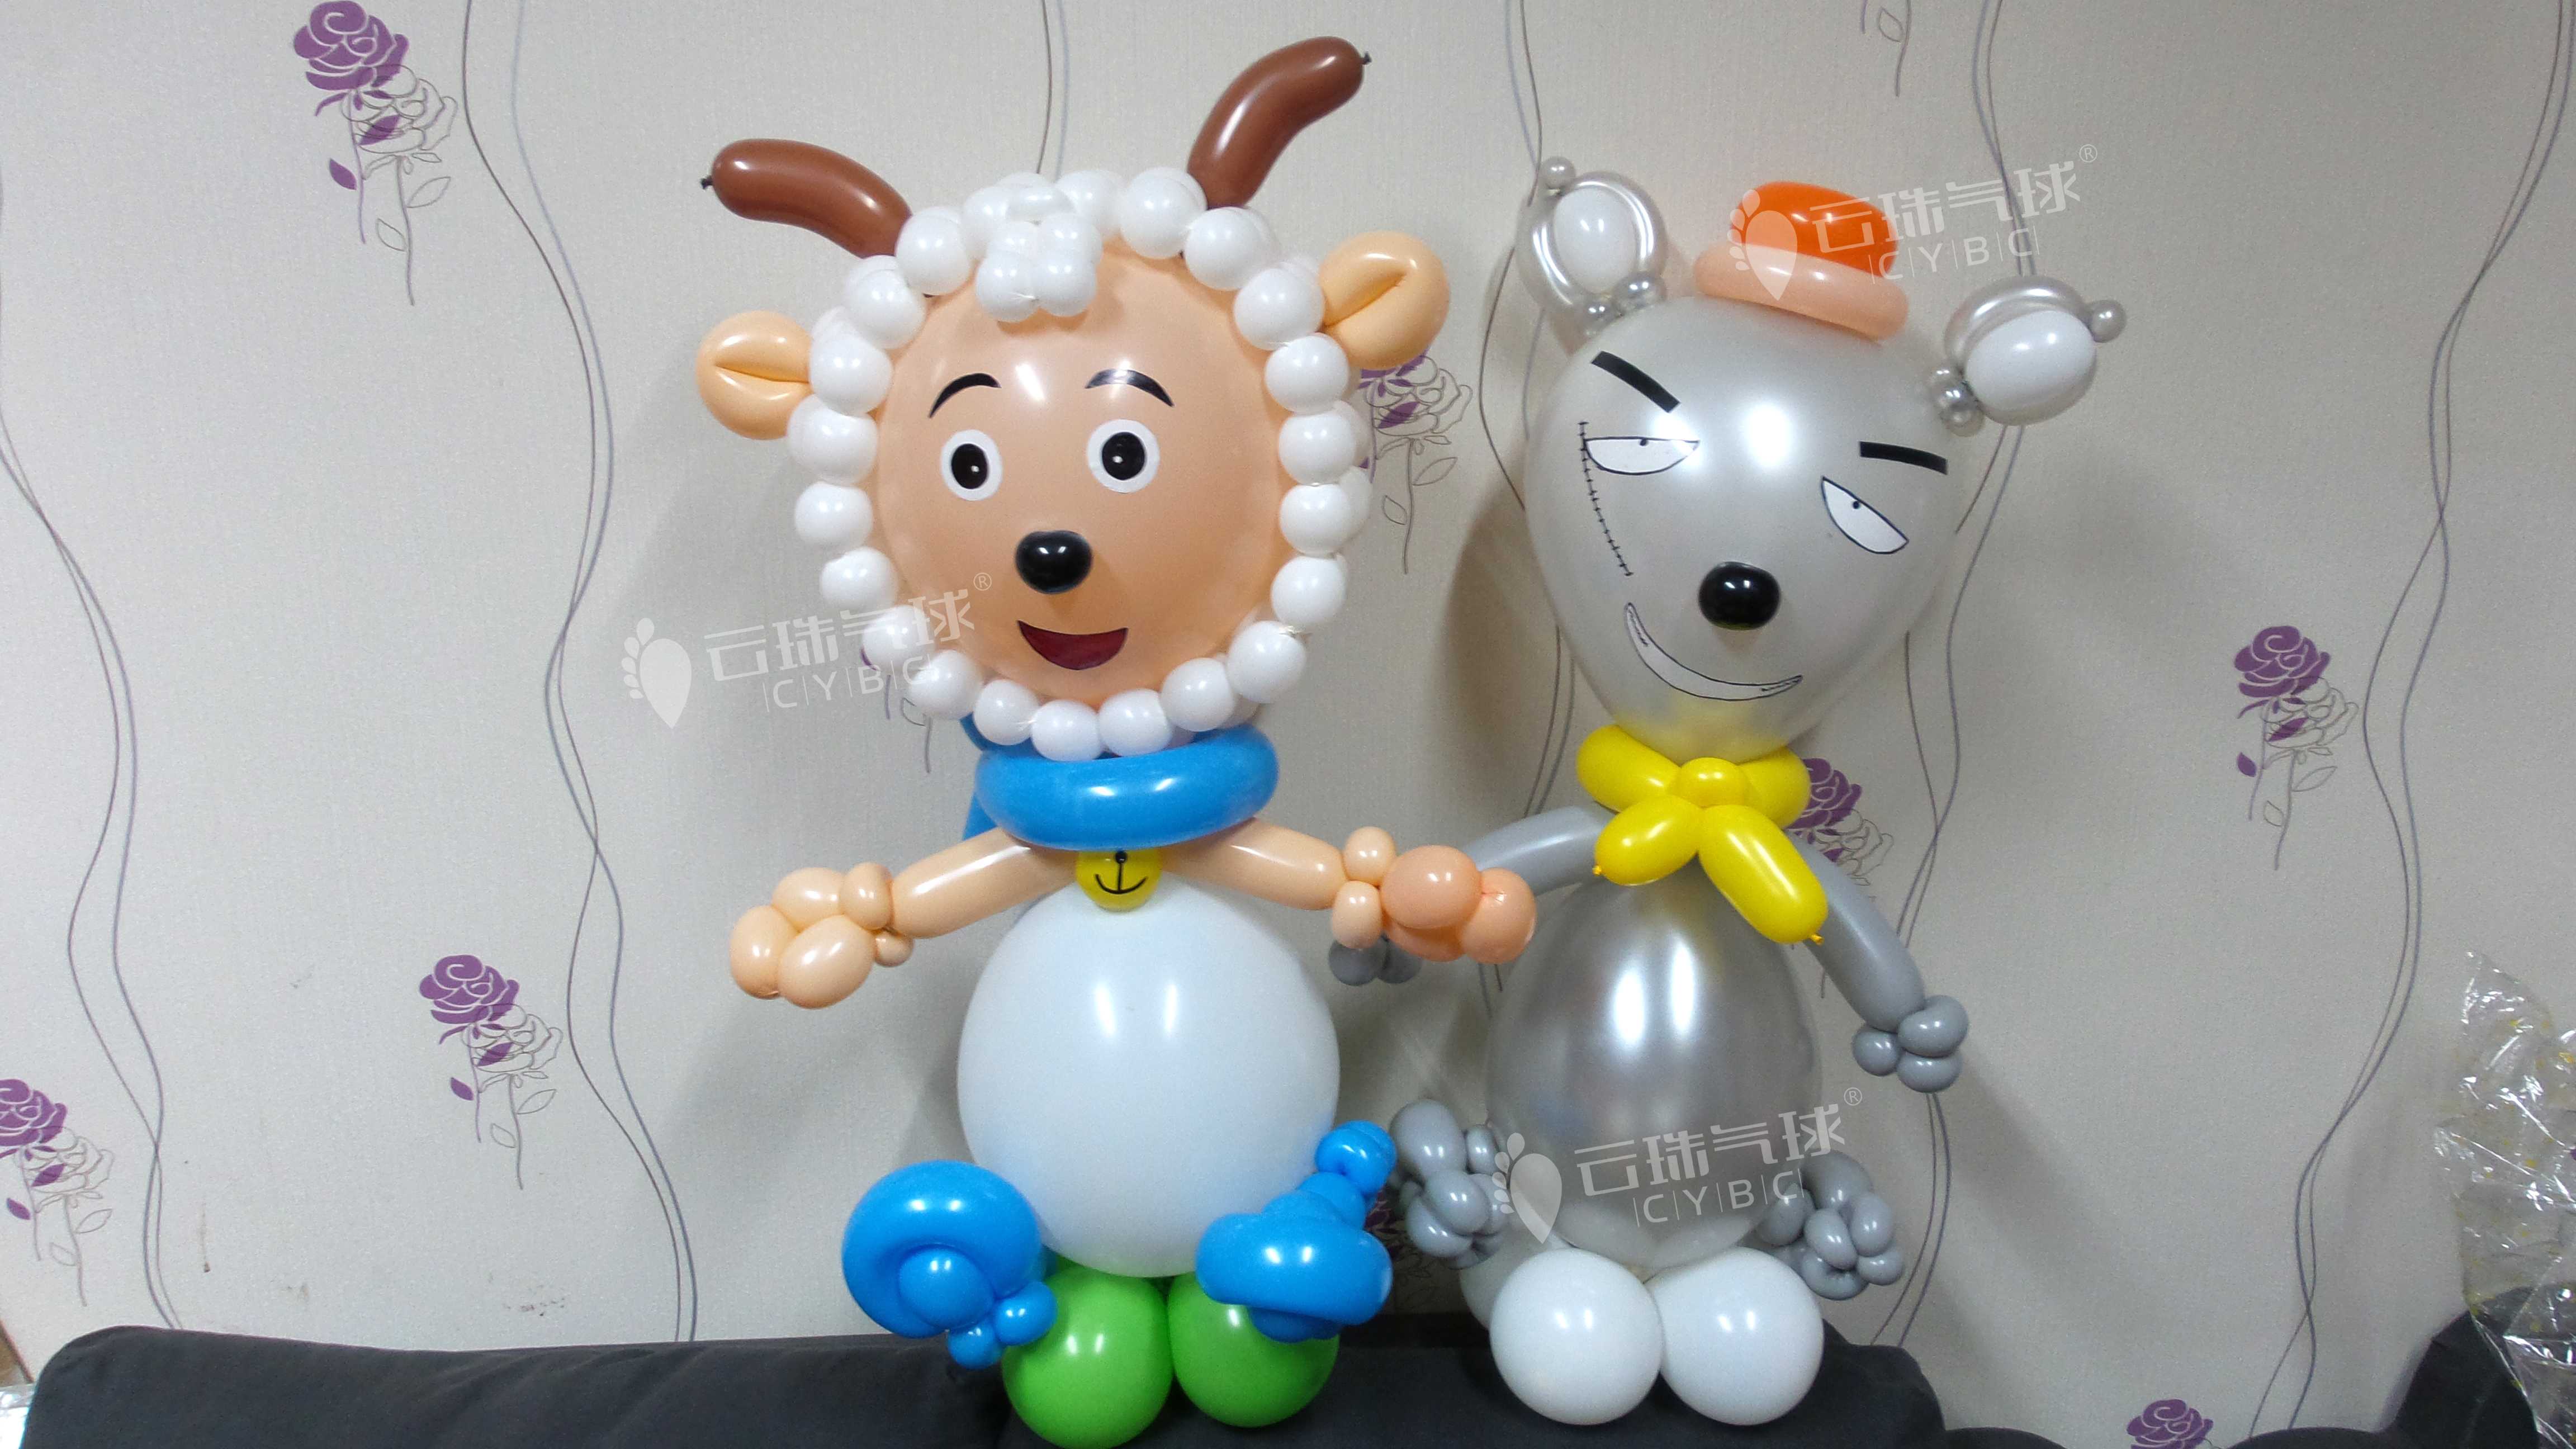 成都市喜羊羊气球/羊村主题气球装饰厂家供应喜羊羊气球/羊村主题气球装饰/卡通造型制作